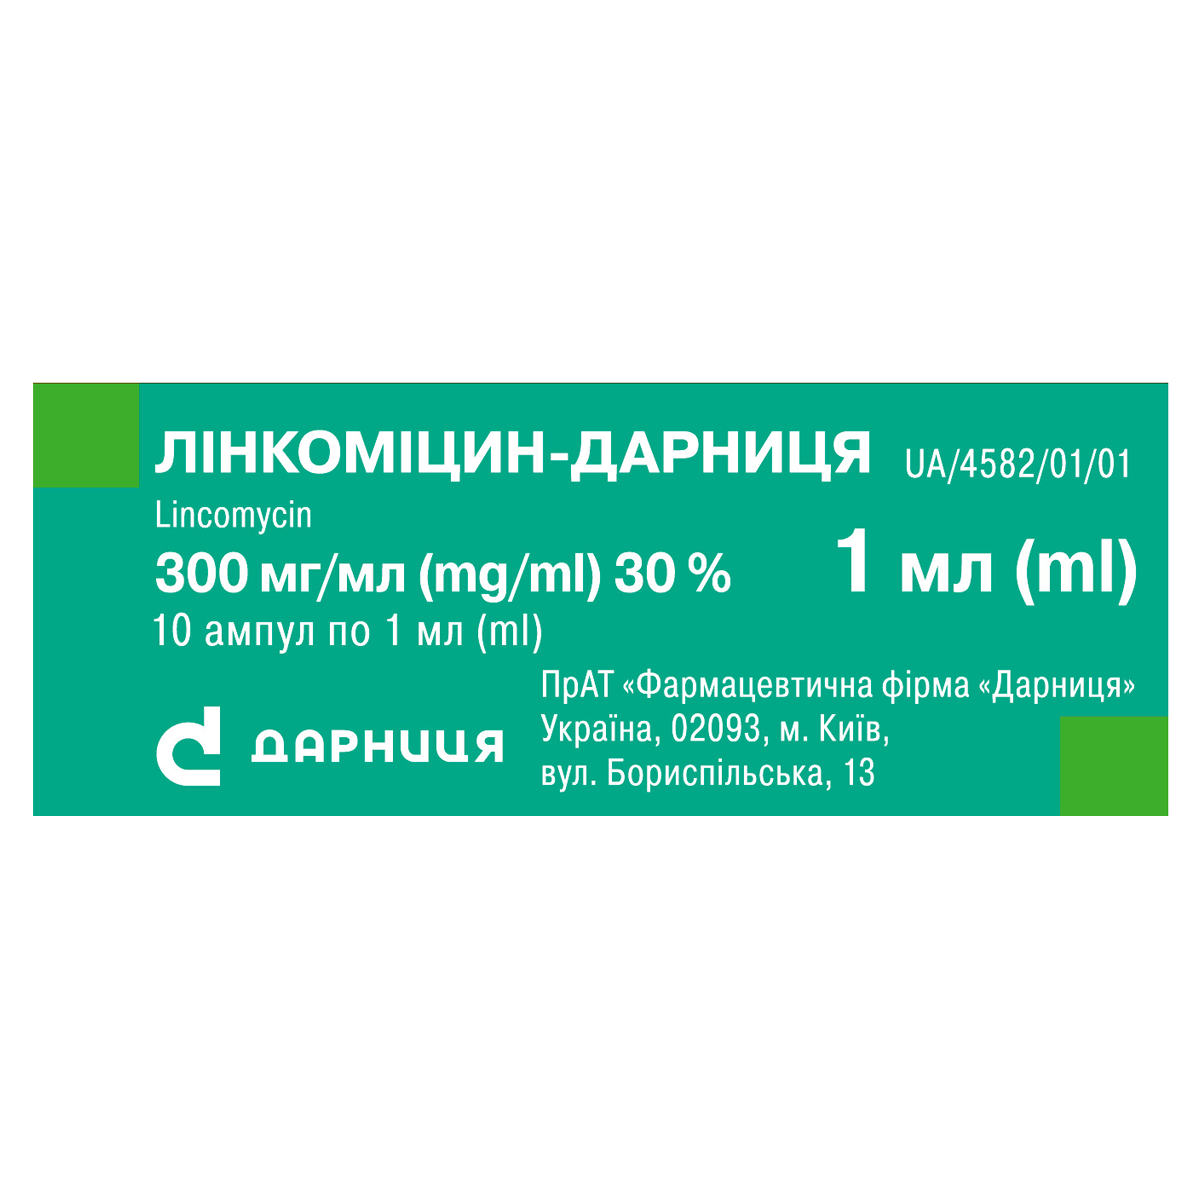 Лінкоміцин-Дарниця фармацевтична компанія «Дарниця»